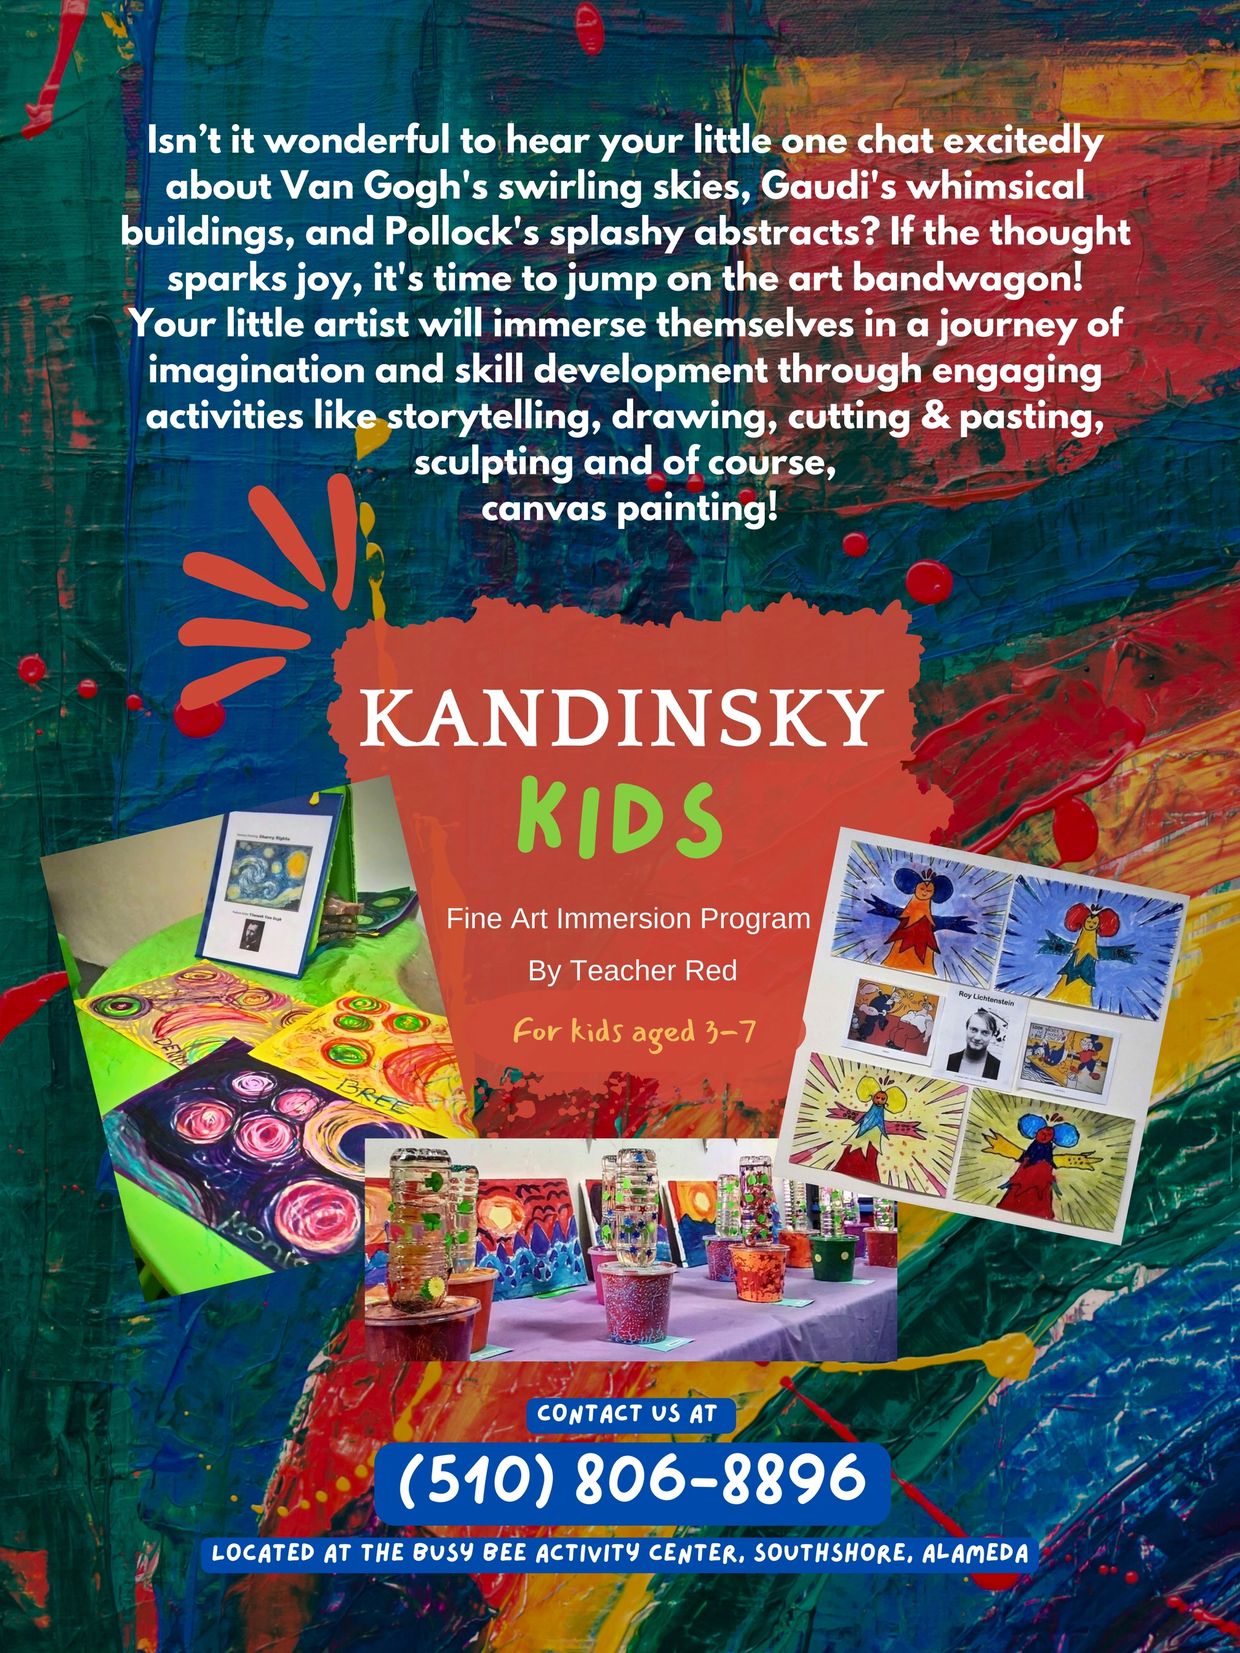 Kandinsky Kids Fine Art Immersion class for kids